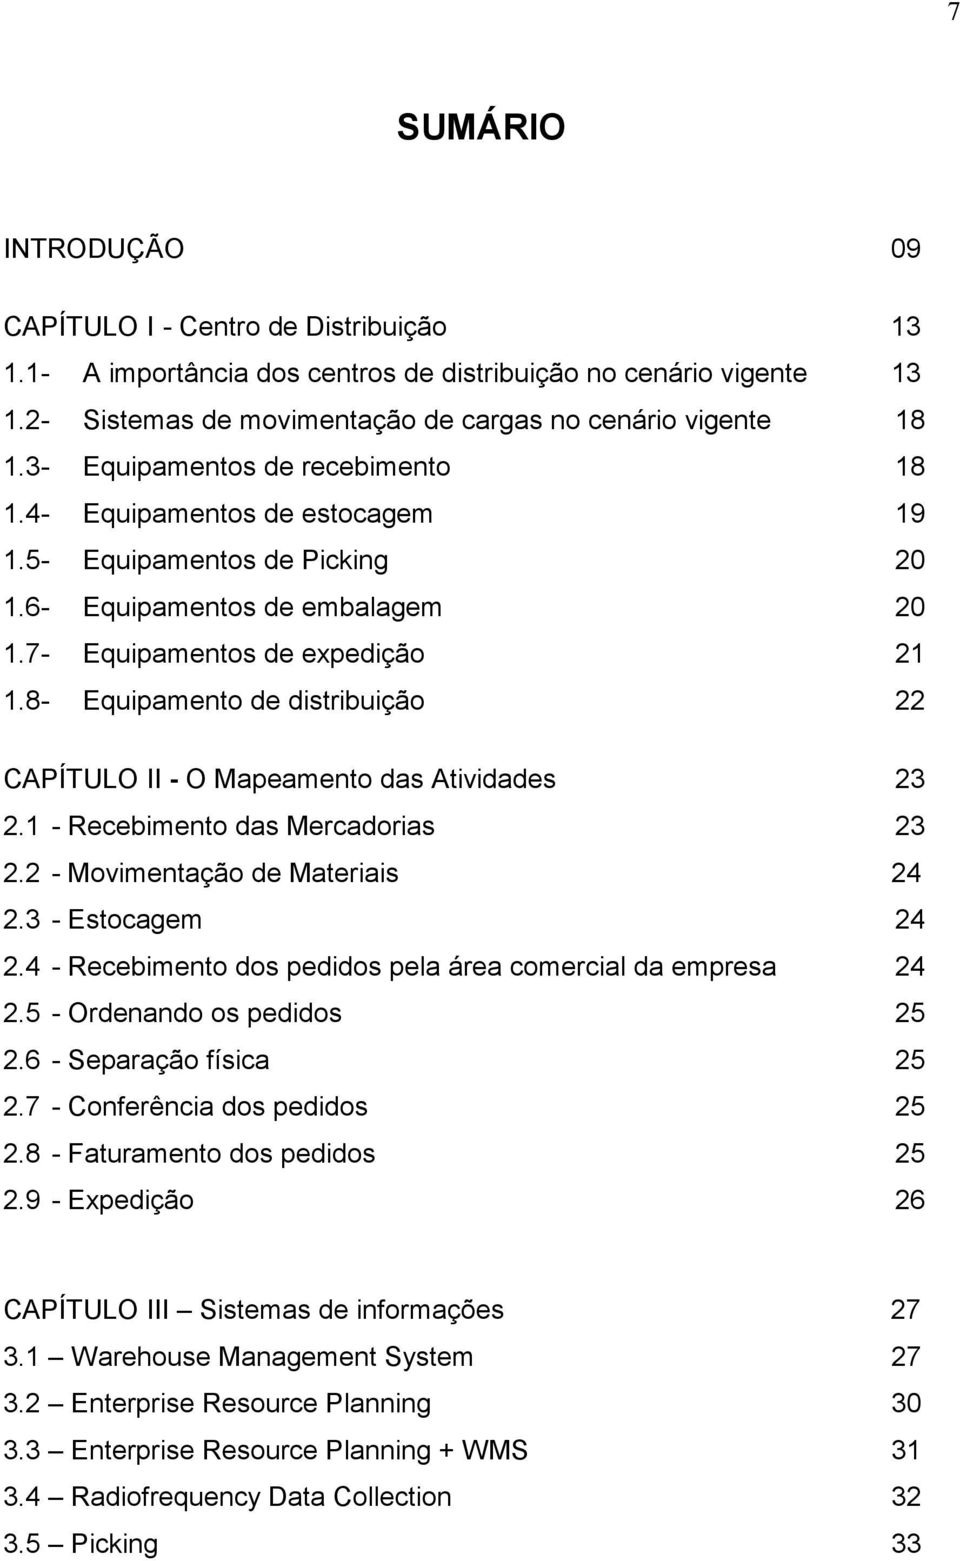 8- Equipamento de distribuição 22 CAPÍTULO II - O Mapeamento das Atividades 23 2.1 - Recebimento das Mercadorias 23 2.2 - Movimentação de Materiais 24 2.3 - Estocagem 24 2.